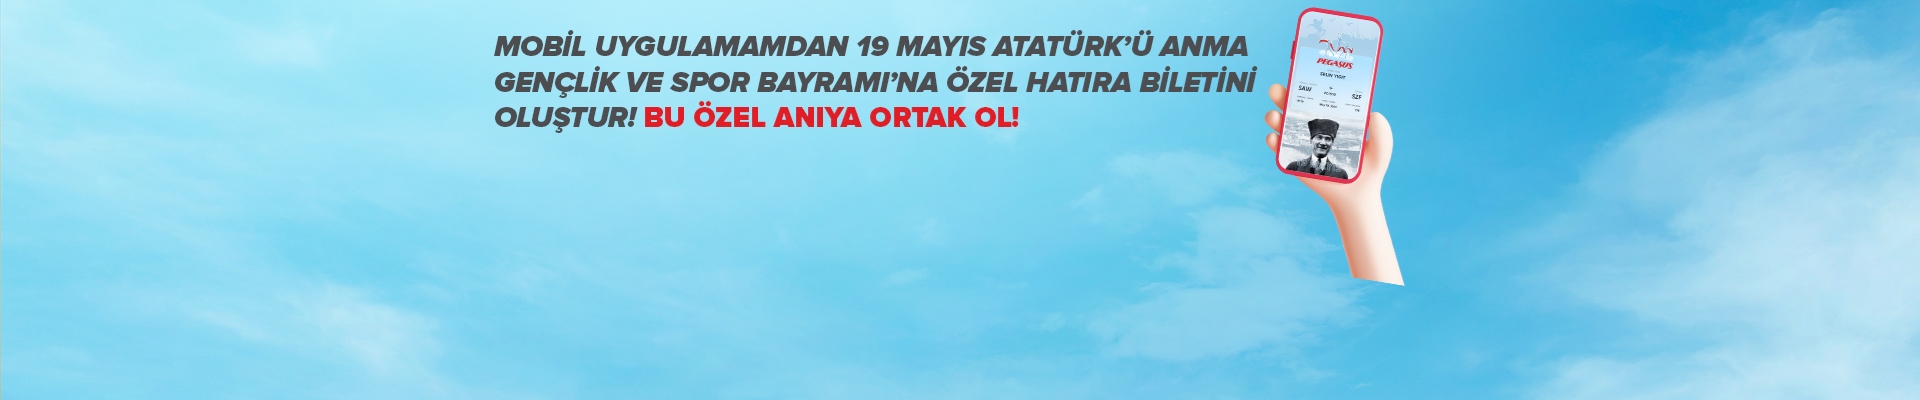 Atatürk'ün izinde, 19 Mayıs'a hatıra bırakıyoruz!